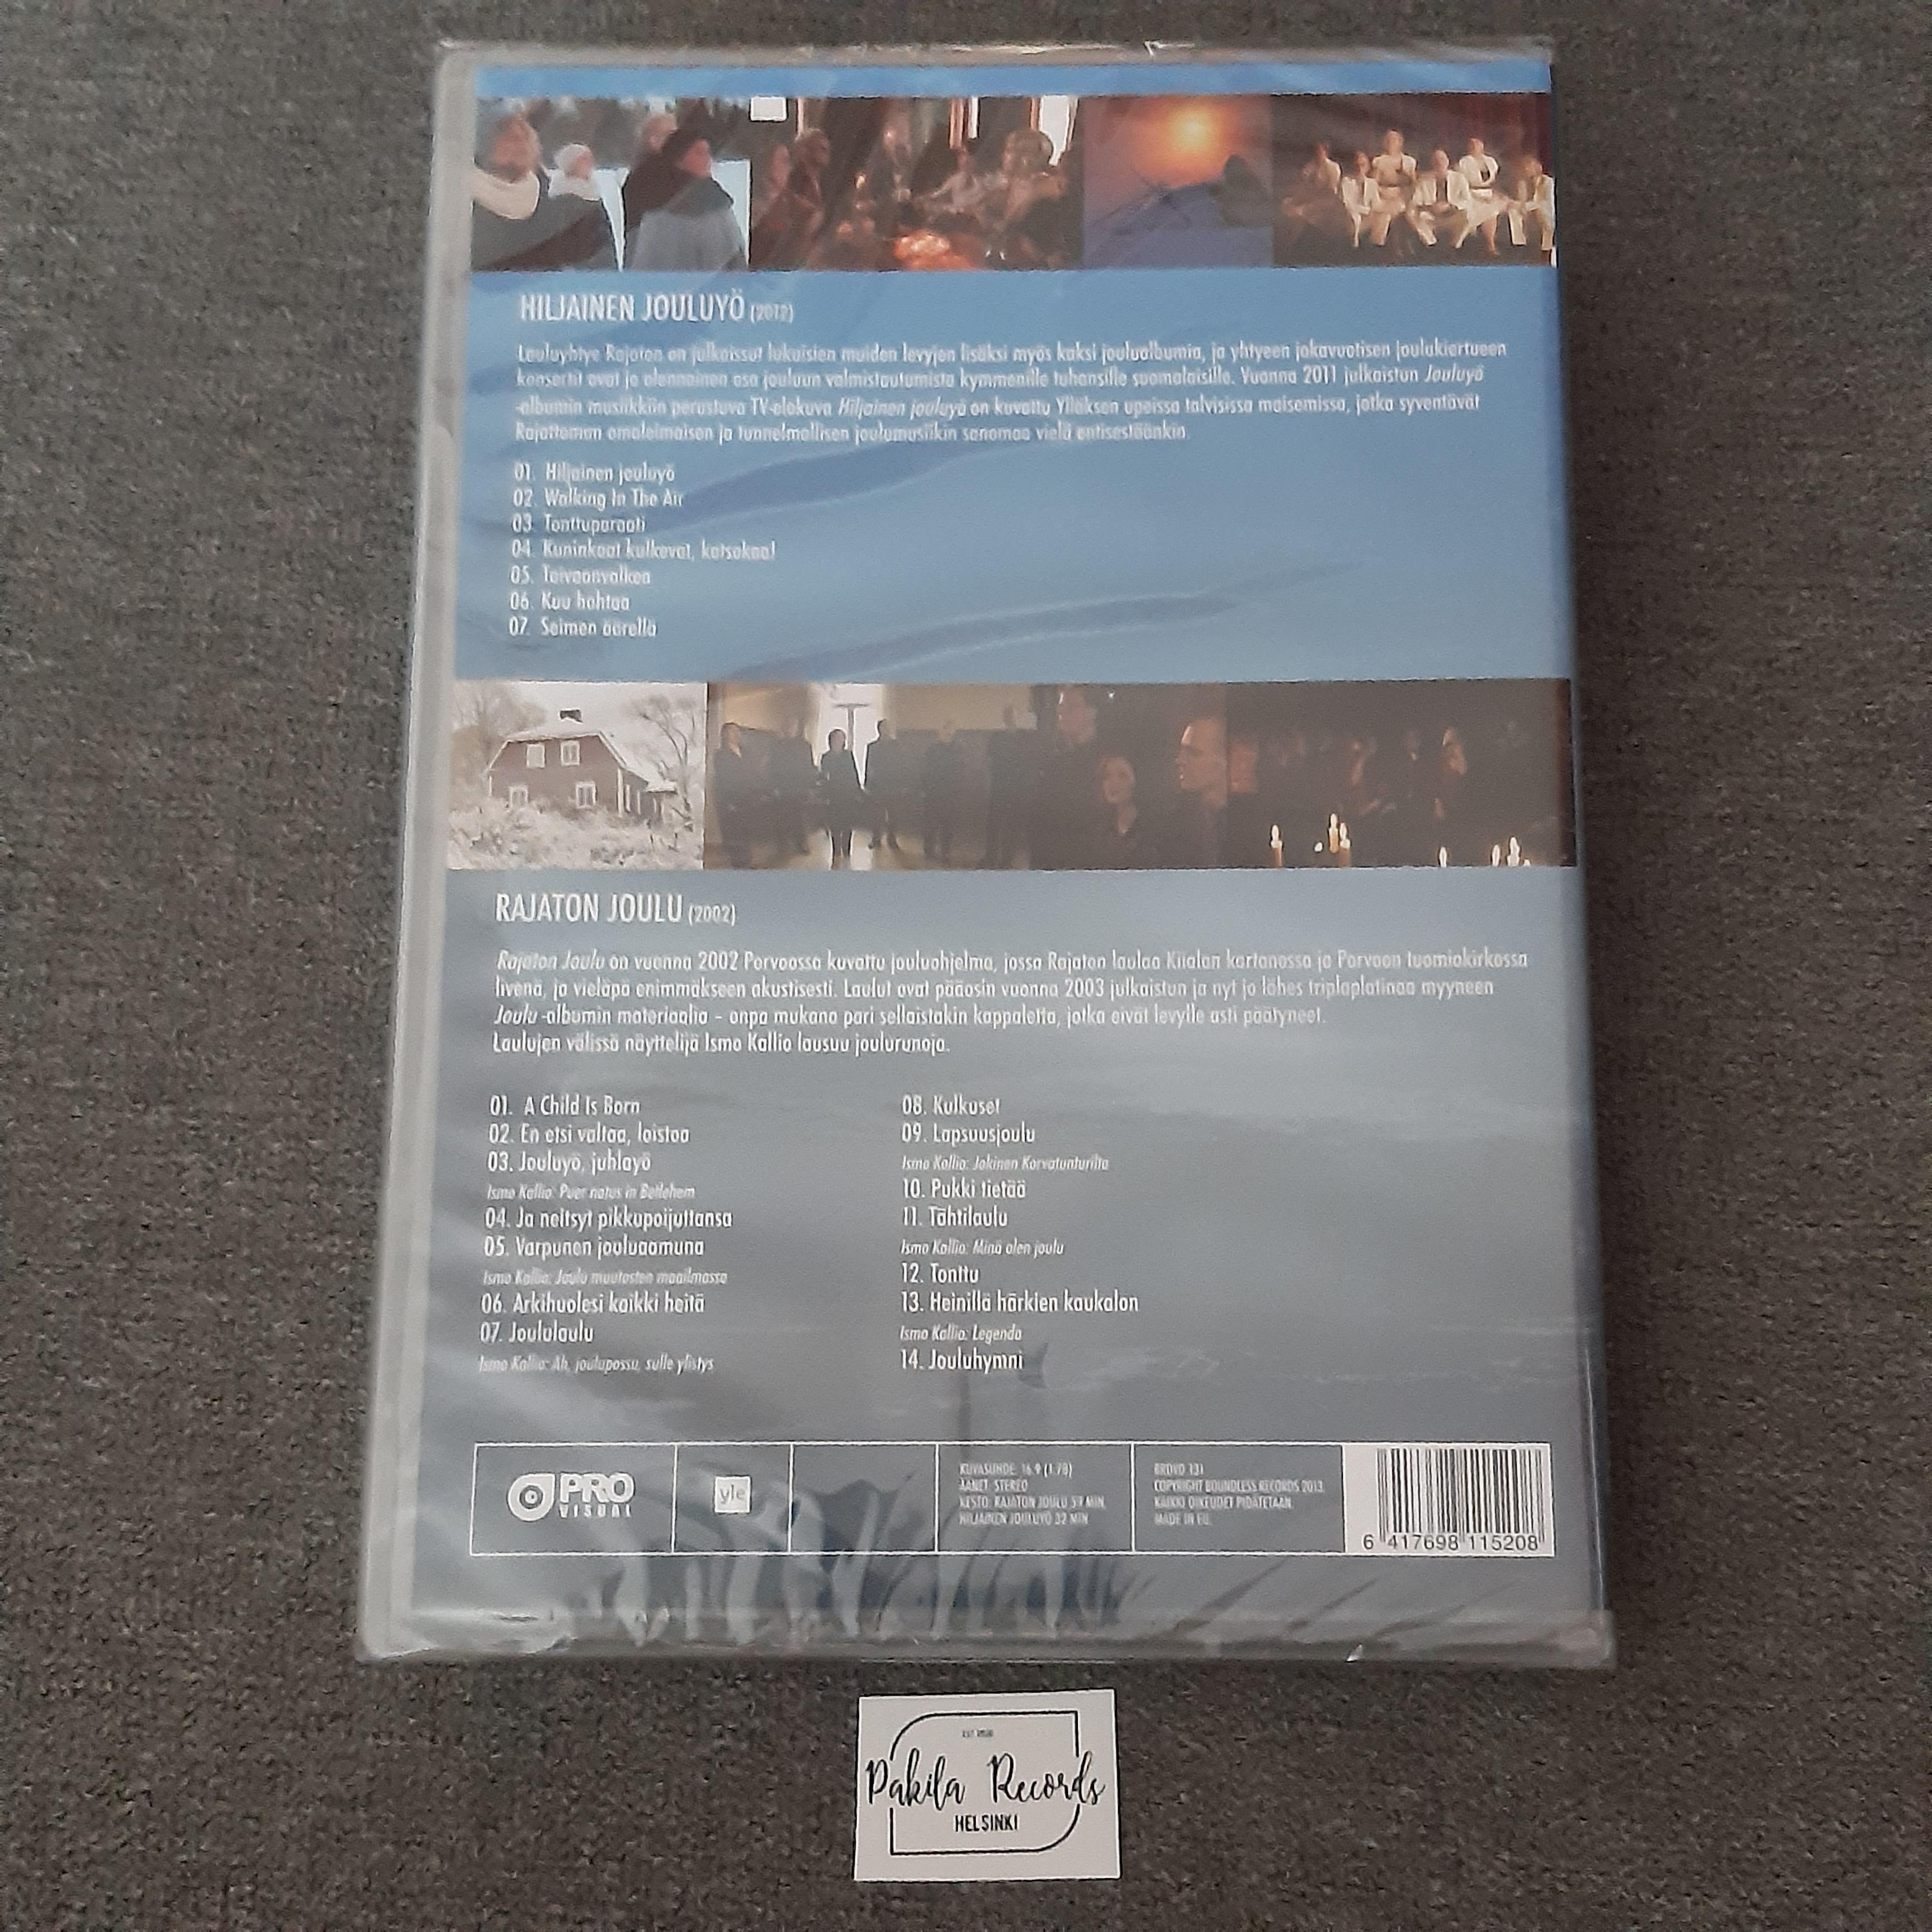 Rajaton - Hiljainen jouluyö, Musiikkielokuva - DVD (käytetty)